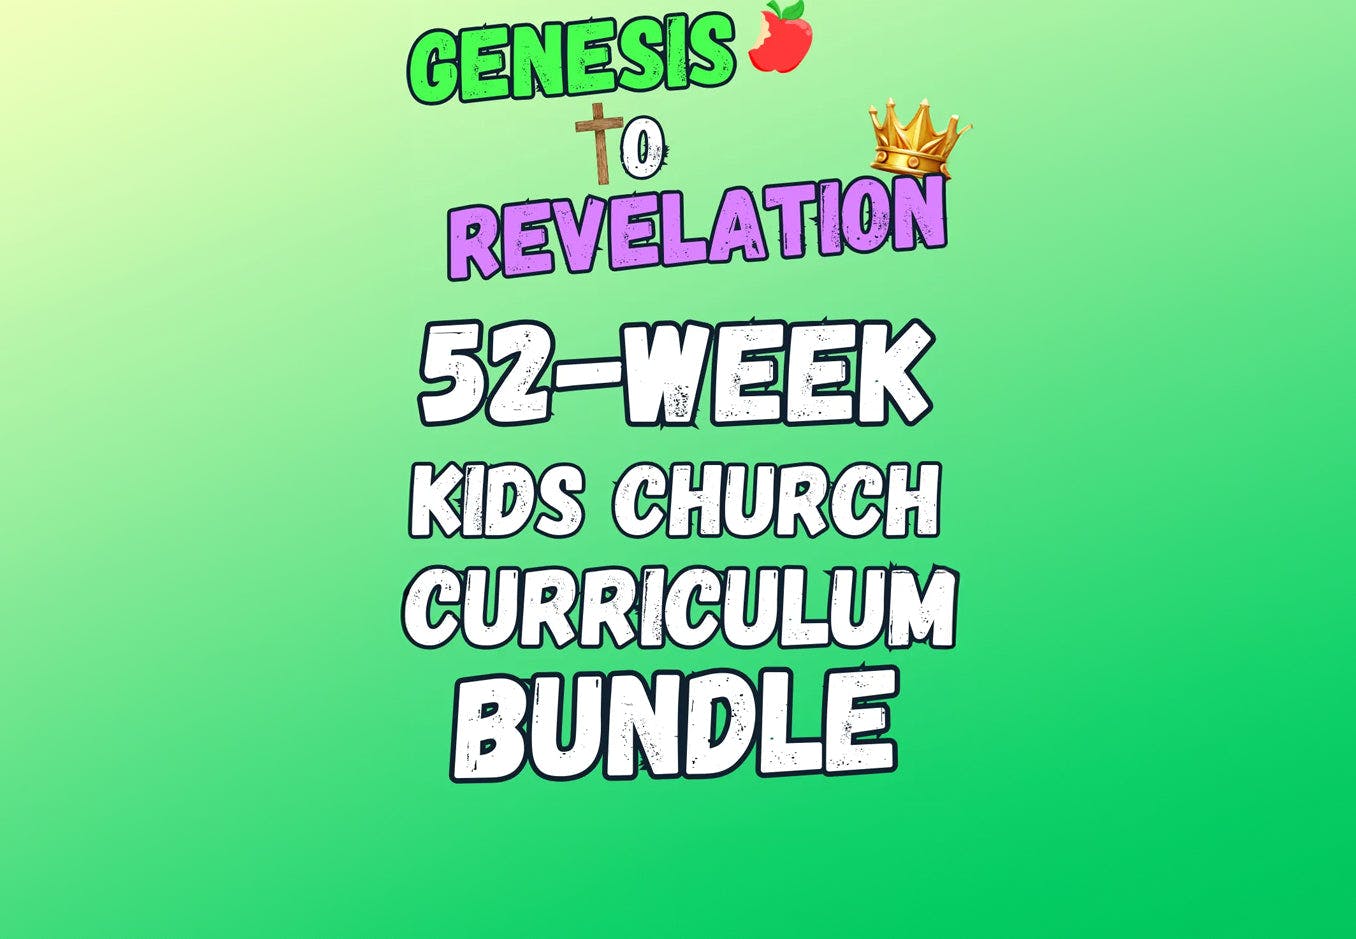 Genesis To Revelation 52-Week Curriculum Bundle